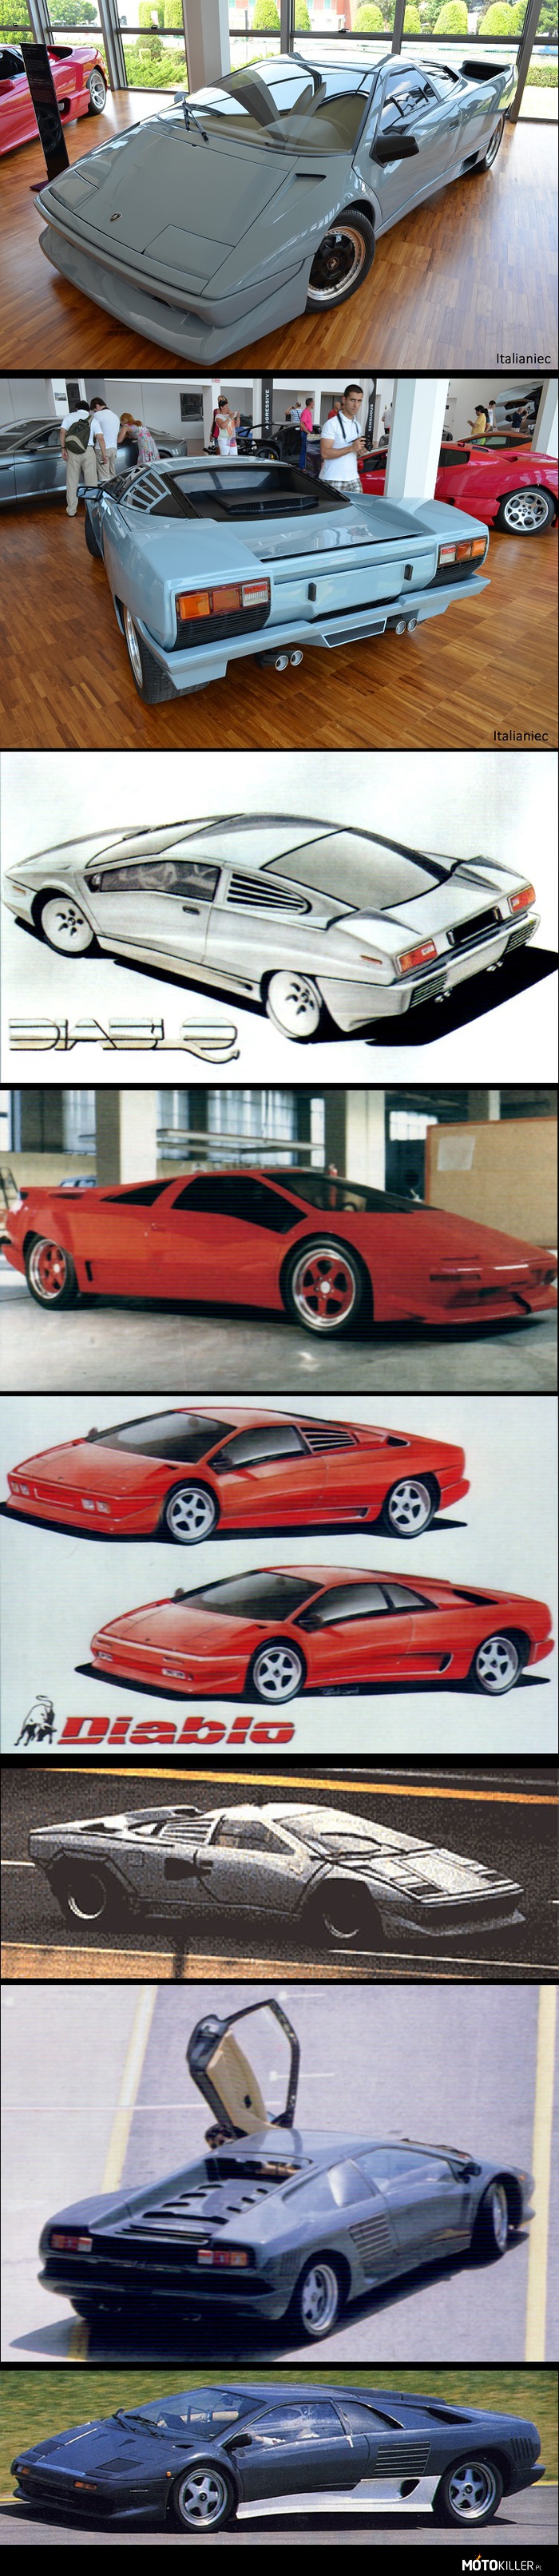 Lamborghini P132 – Pewnie mało osób o nie słyszało i będzie jeszcze mniejsze zainteresowanie.
1987 rok, Countach jest w sprzedaży od 14 lat, więc już najwyższy czas pomyśleć nad jego następcą. Projekt zlecono Marcello Gandini i efekty można zobaczyć na trzecim zdjęciu. Klapa silnika miała być ze szkła ale testy wykazały że nie był korzystny dla chłodzenia silnika, więc z niego zrezygnowano. Do projektu wtrącił się też Chrysler, nowy właściciel włoskiej marki. Zmienili projekt Gandiniego (4 zdjęcie), potem doszli razem do kompromisu. Na końcu Gandini narysował definitywny model następcy Countacha, o nazwie Diablo.
Powstało kilka testowych prototypów (ostatnie trzy zdjęcia).
Tak właściwie to następca Countacha miał zostać stworzony na 25 rocznicę, ale panowie z lamborghini za późno się z tym obudzili, więc z okazji 25-lecia swojego istnienia, w 1988, zrobili specjalną wersję Countacha. 